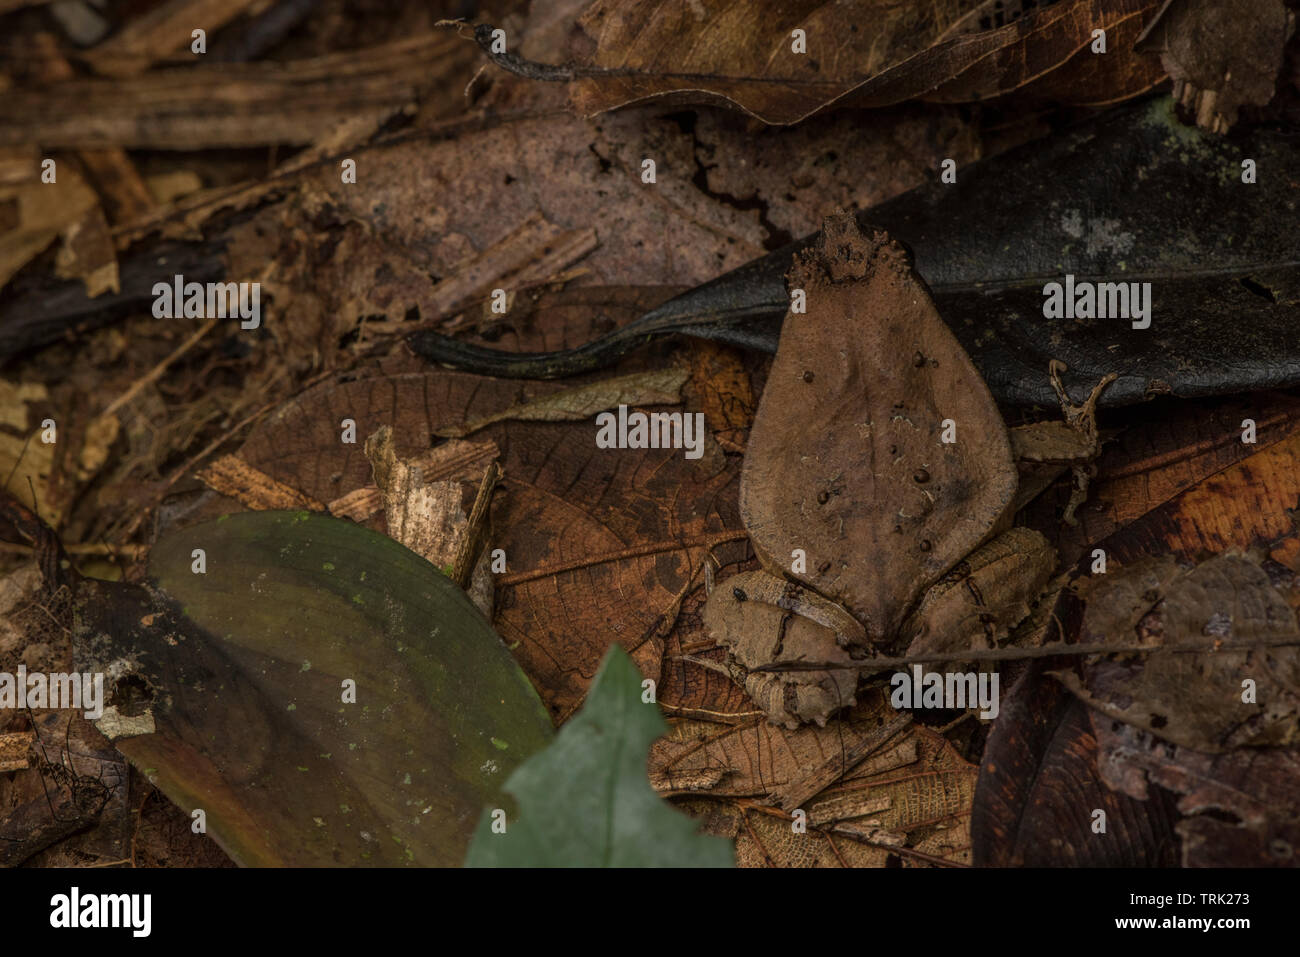 Perezi Edalorhina (Perez la rana snouted) è un rospo simili dalla giungla amazzonica, assomiglia ad una foglia morta e vive sul suolo della foresta. Foto Stock